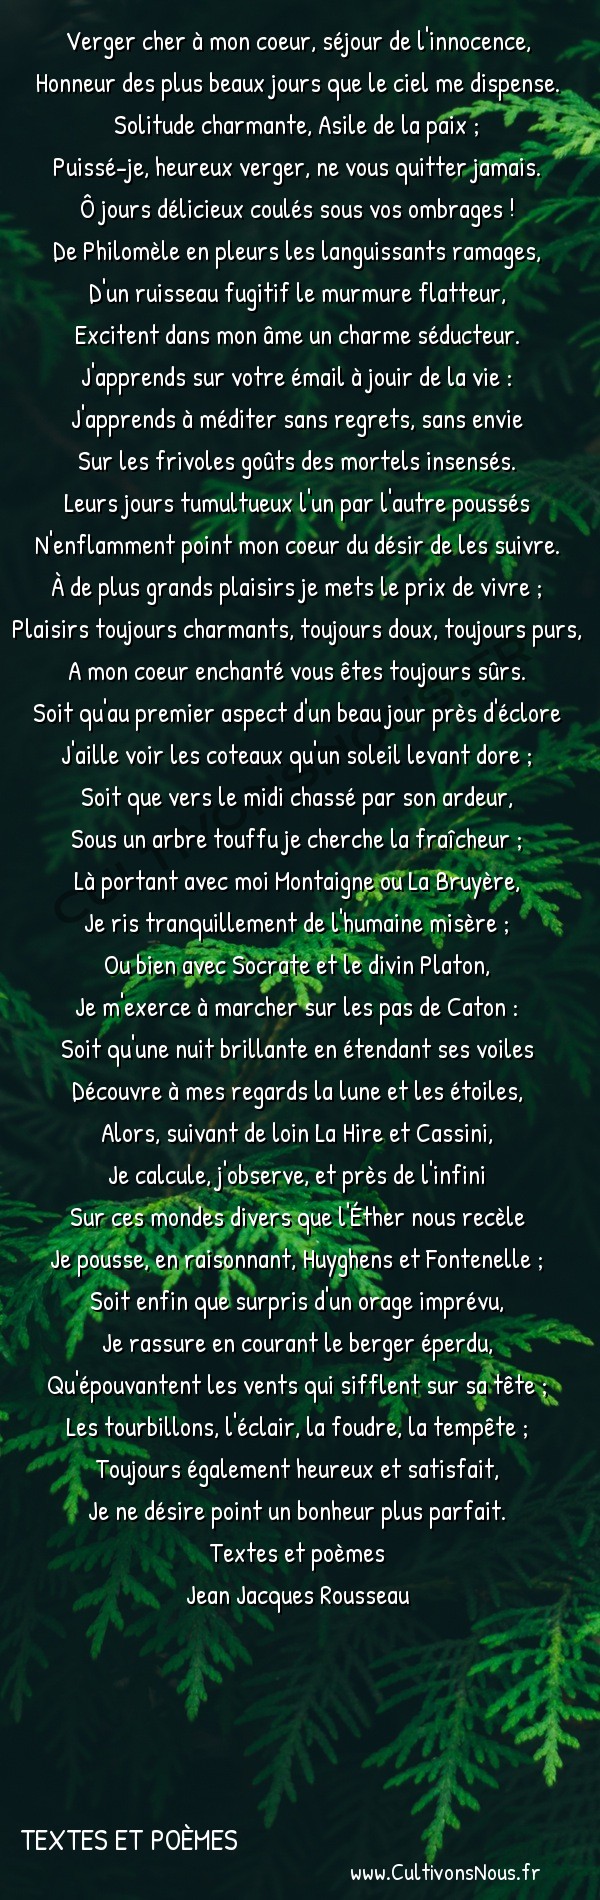  Poésie Jean Jacques Rousseau - textes et poèmes - Le verger de Mme de Warens -  Verger cher à mon coeur, séjour de l'innocence, Honneur des plus beaux jours que le ciel me dispense.